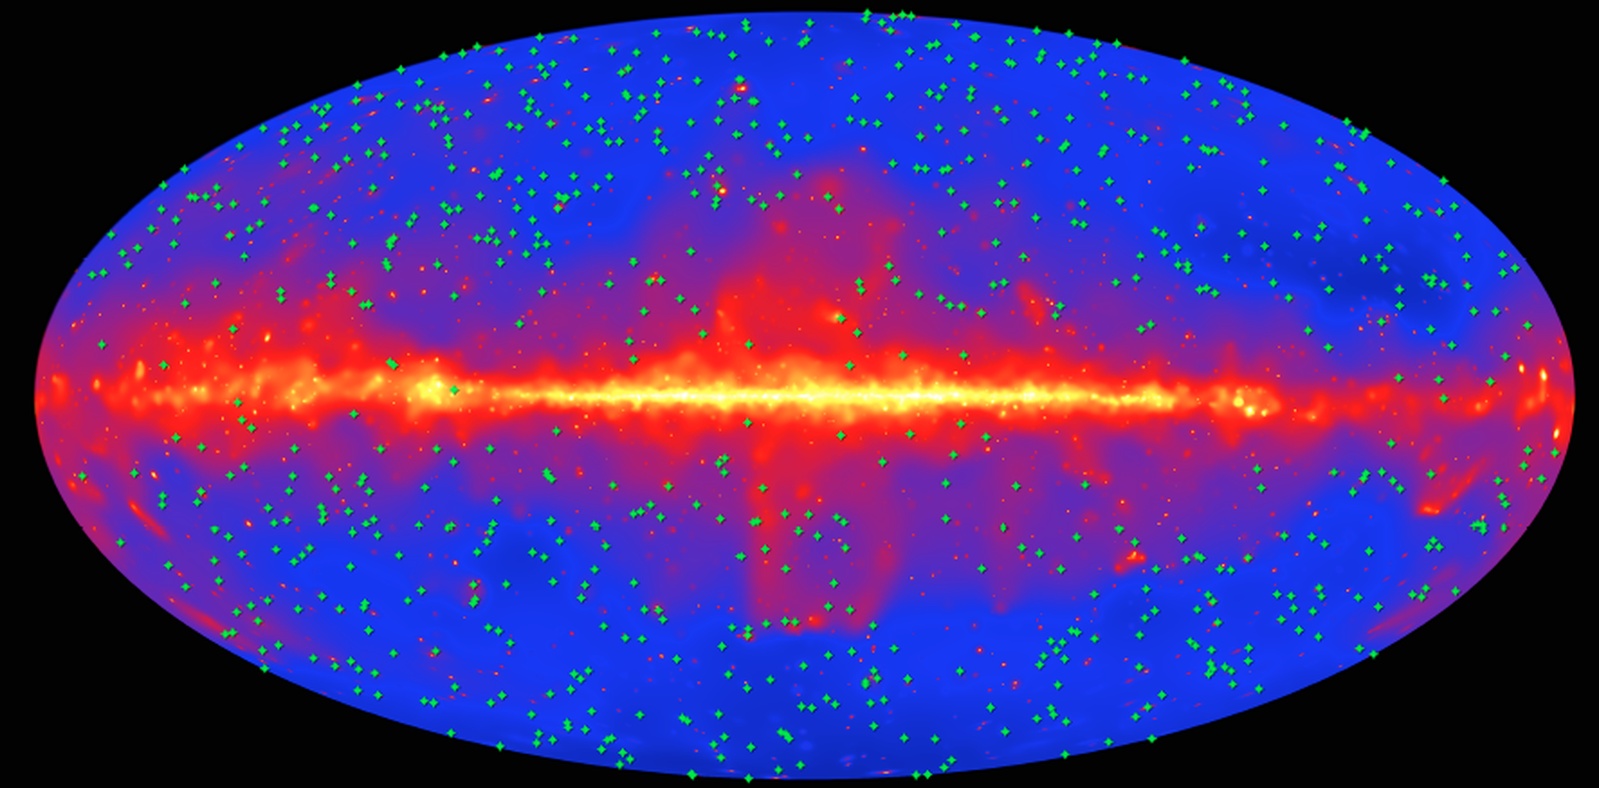 Karta celotnega neba prikazuje položaje 739 blazarjev (zeleni križci), ki so jih v raziskavi Fermi LAT uporabili za merjenje zunajgalaktične svetlobe ozadja. Ozadje (modra) prikazuje nebo, kot ga je v 9 letih opazovanj videl Fermi LAT v visoko-energijski gama svetlobi. Ravnina naše Galaksije poteka vodoravno po sredini slike. Vir: NASA/DOE/Fermi LAT Collaboration.